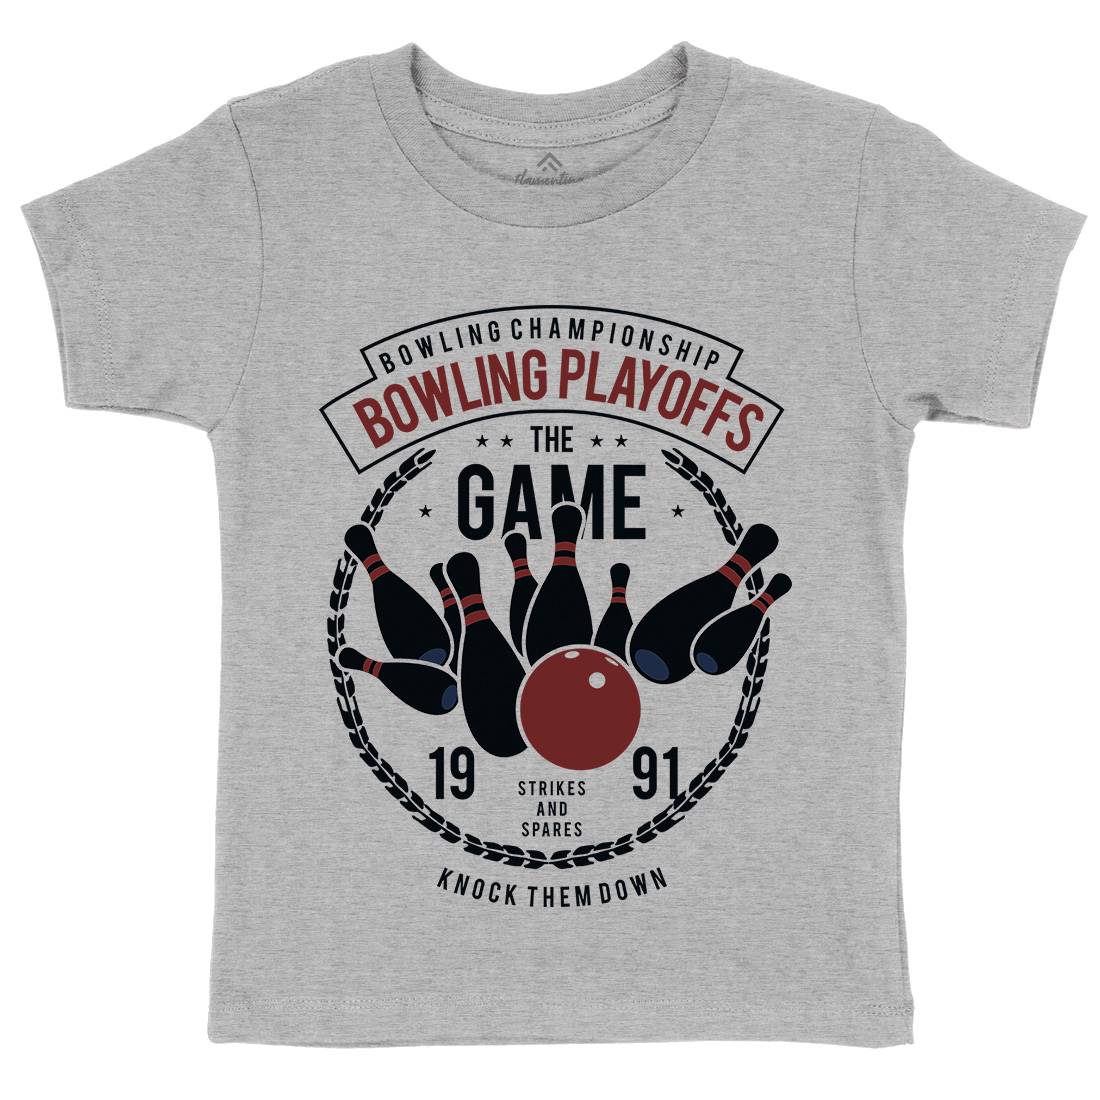 Bowling Playoffs Kids Crew Neck T-Shirt Sport B384